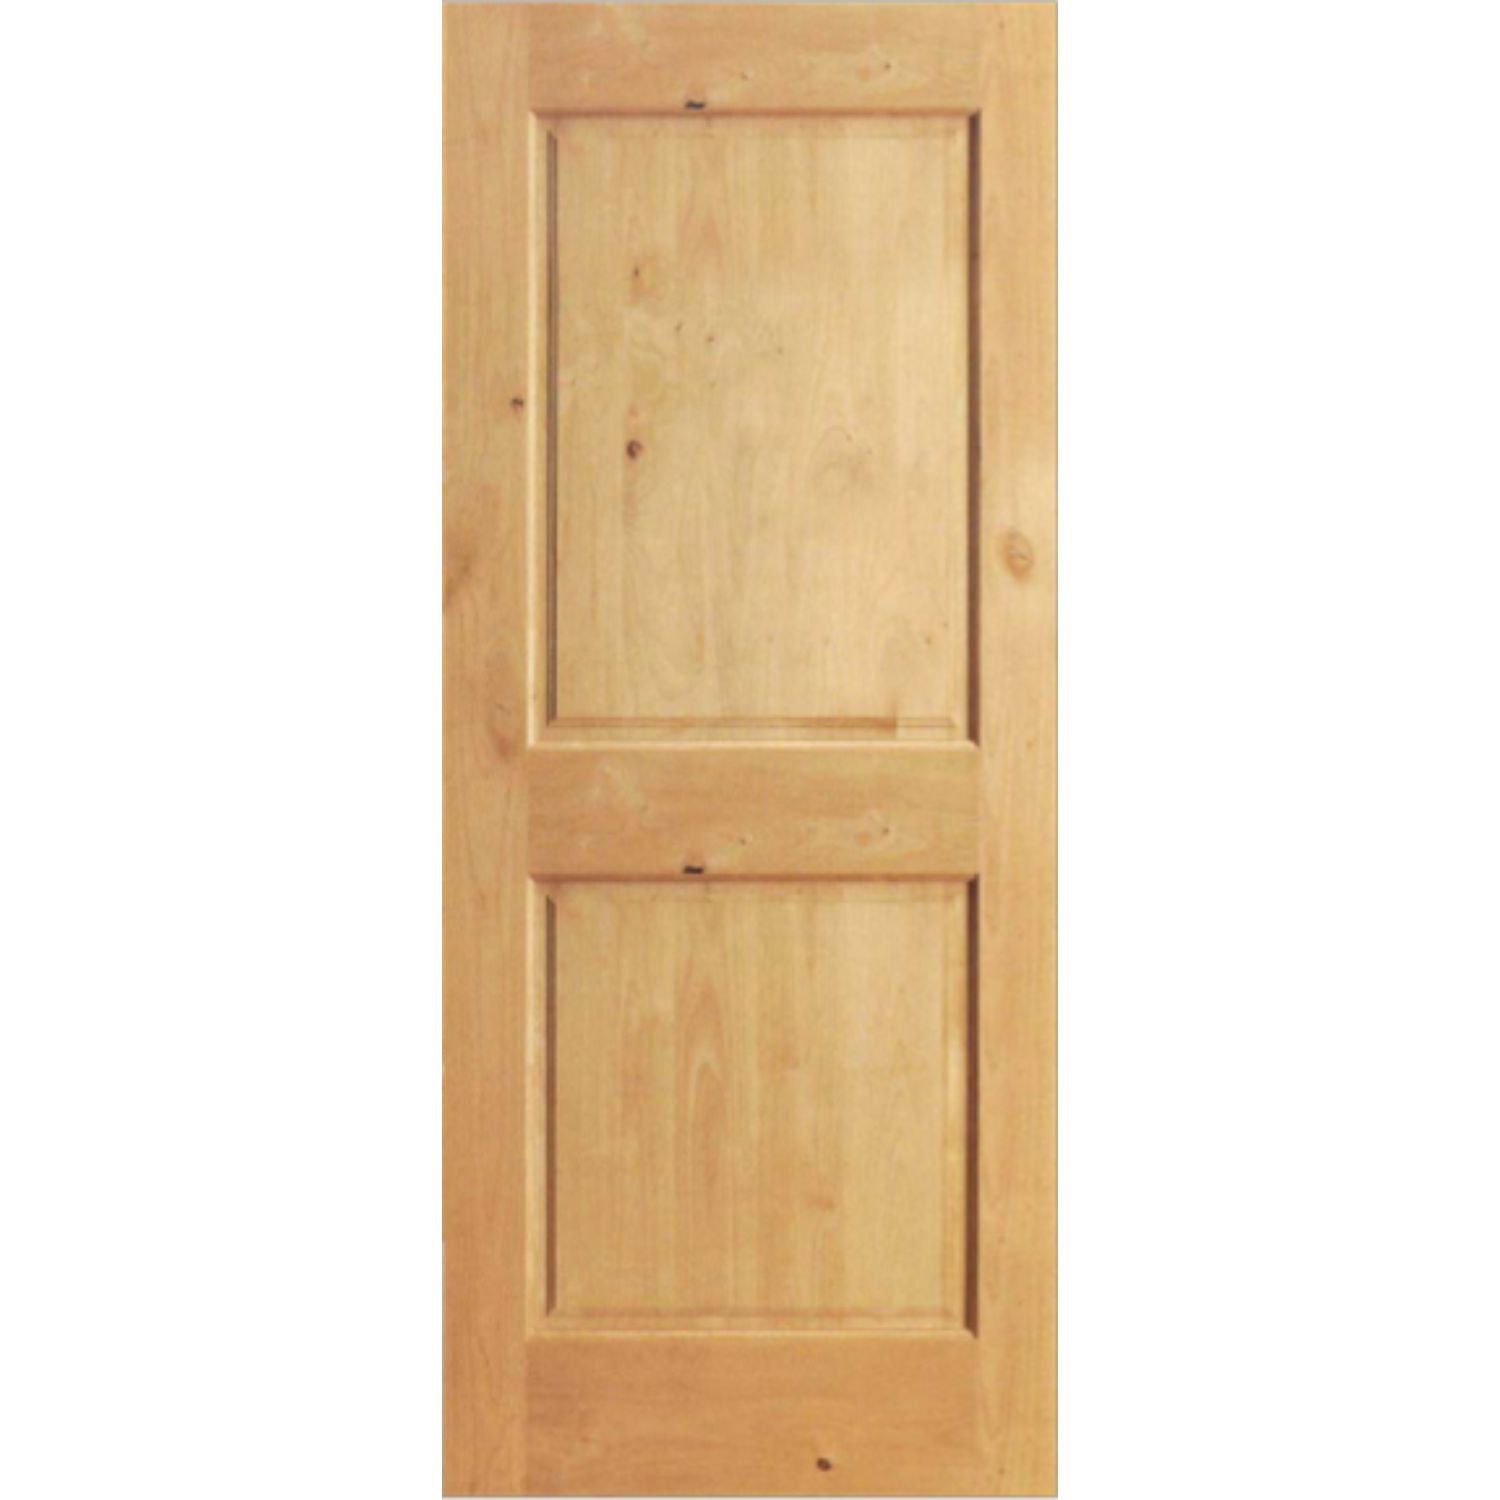 Afrein - Classic Rustic Wooden Two Panel Interior Door